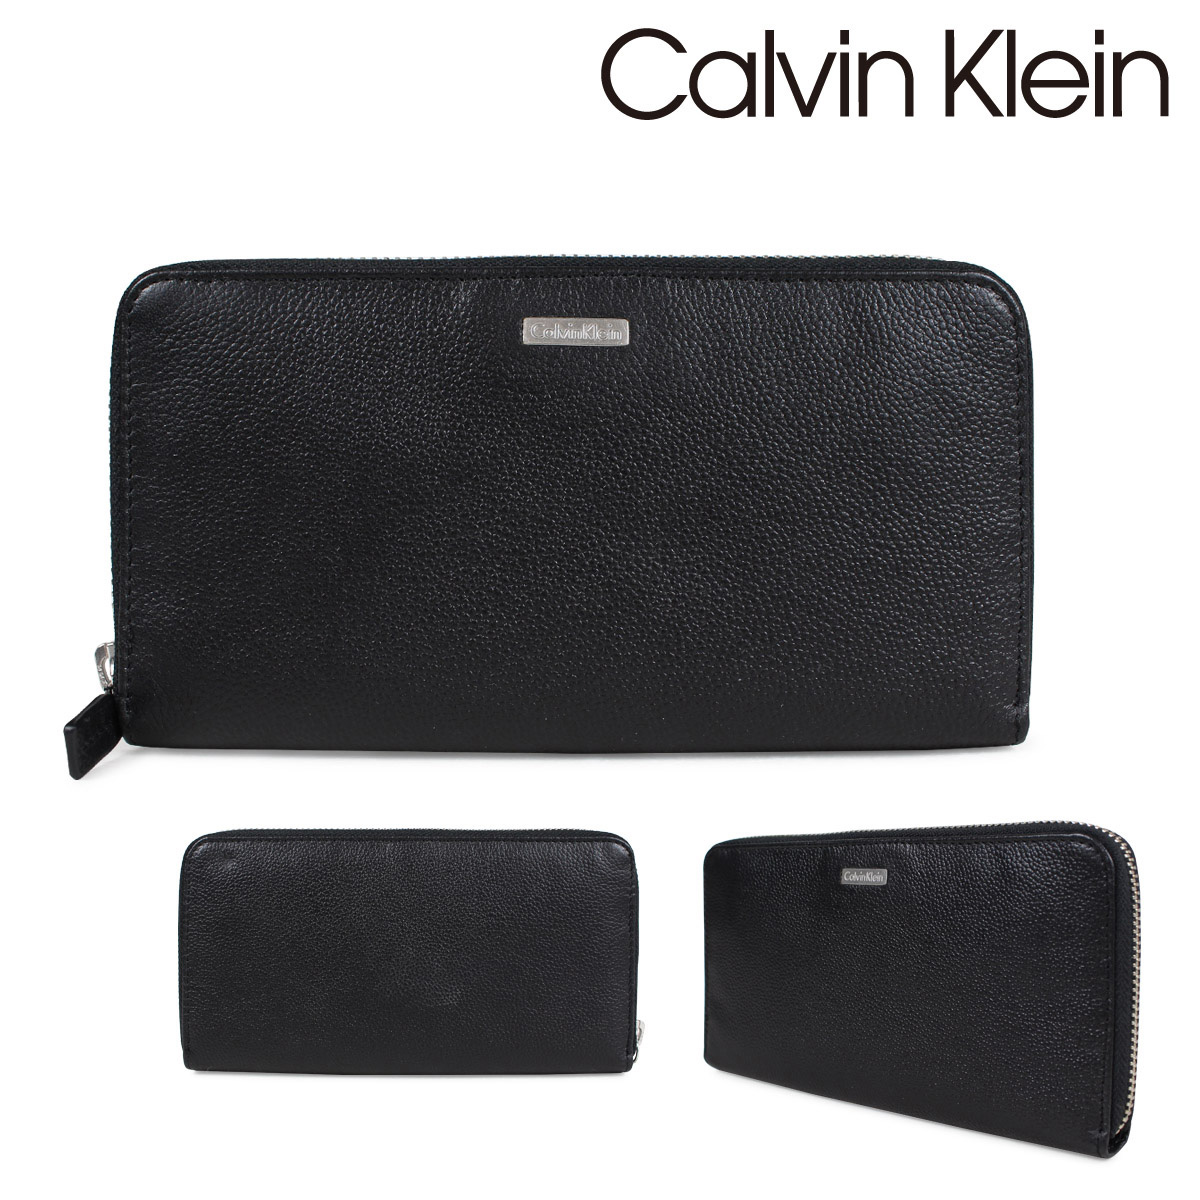 calvin klein zip around wallet